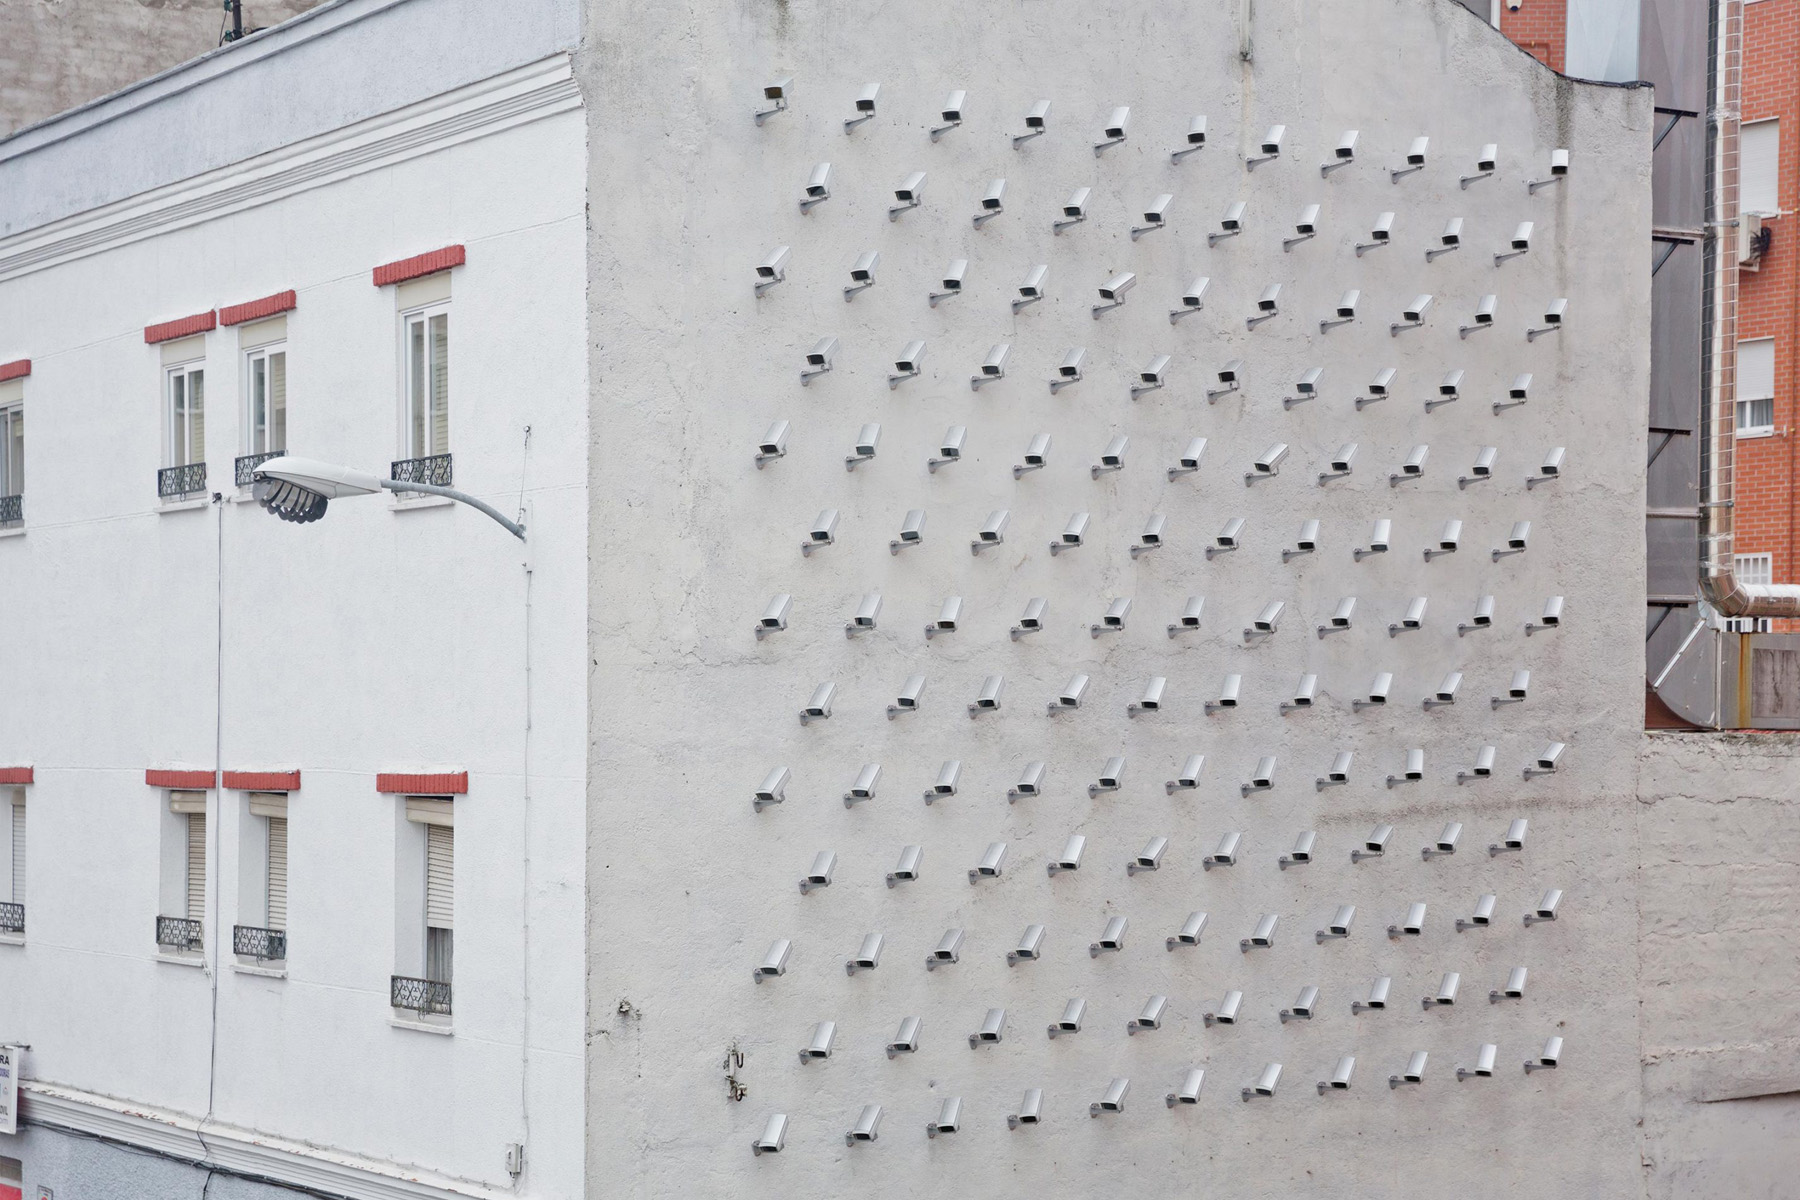 Videokameras an Hauswand, Quelle: spY, Street Artist